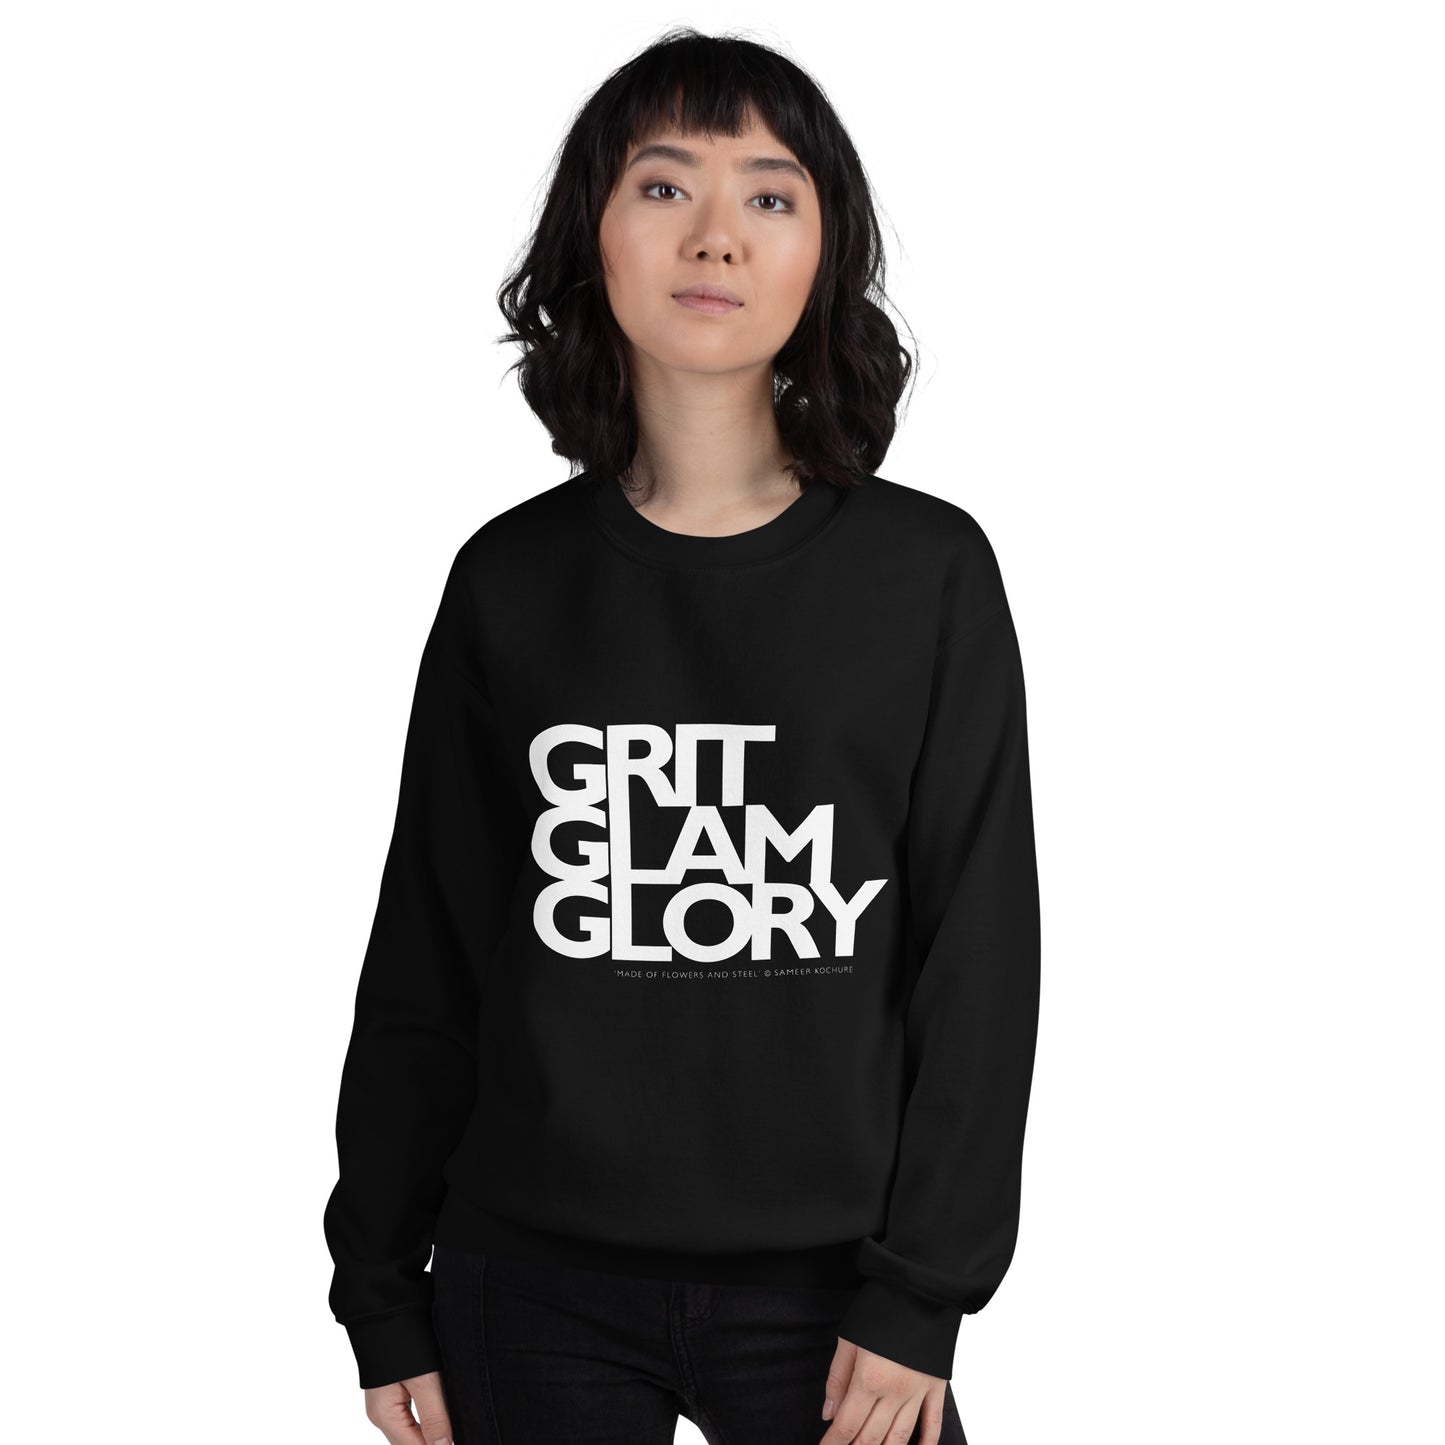 'Grit Glam Glory' Unisex Sweatshirt